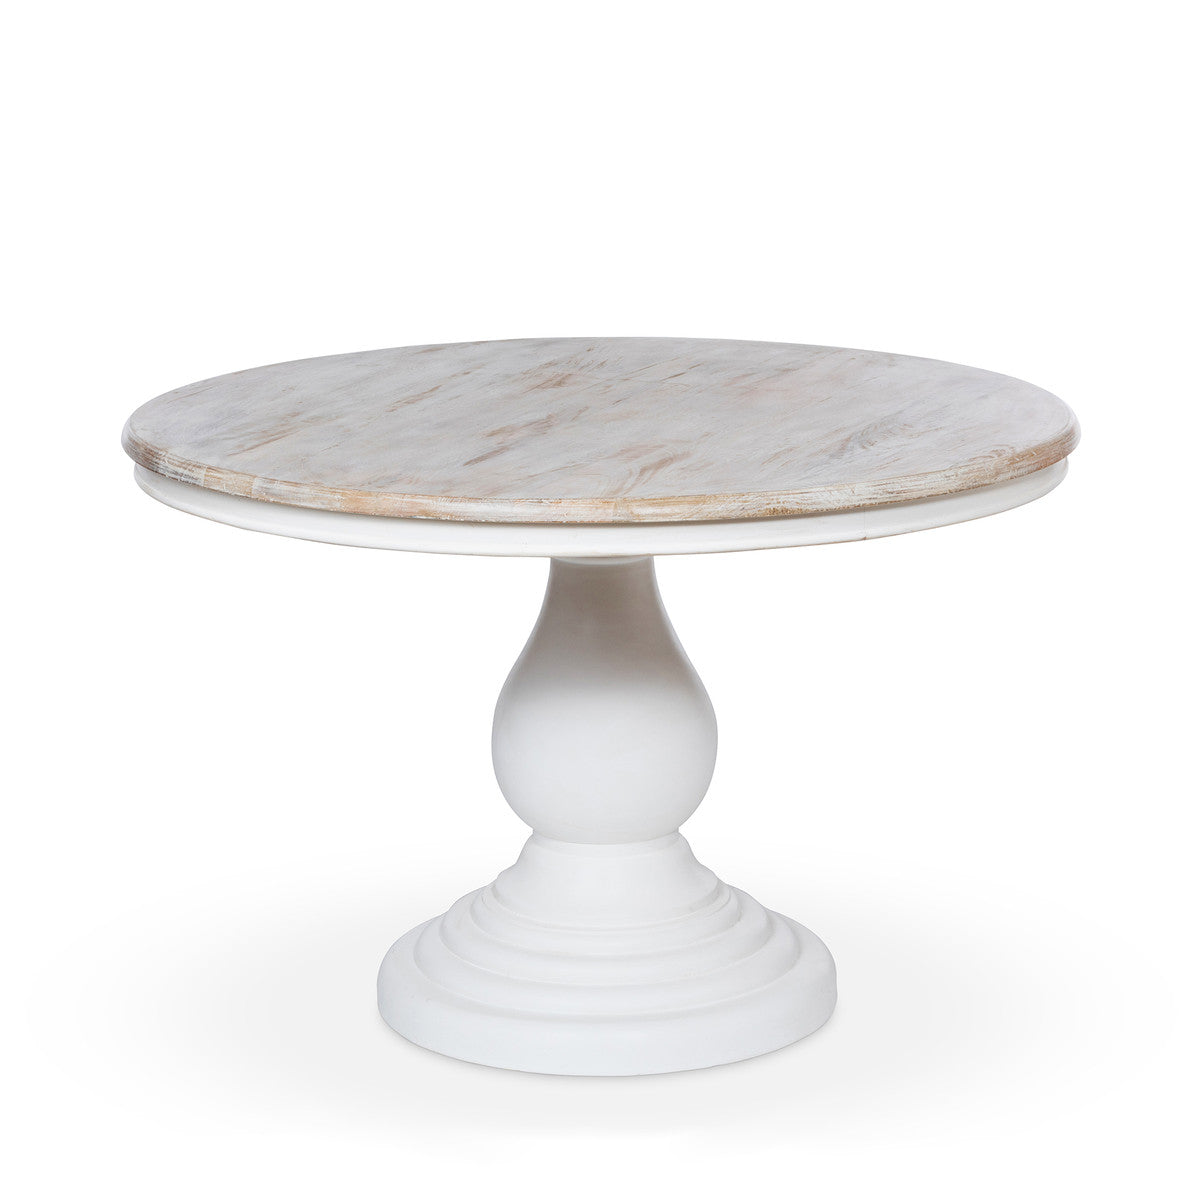 Coastal White Pedestal Table